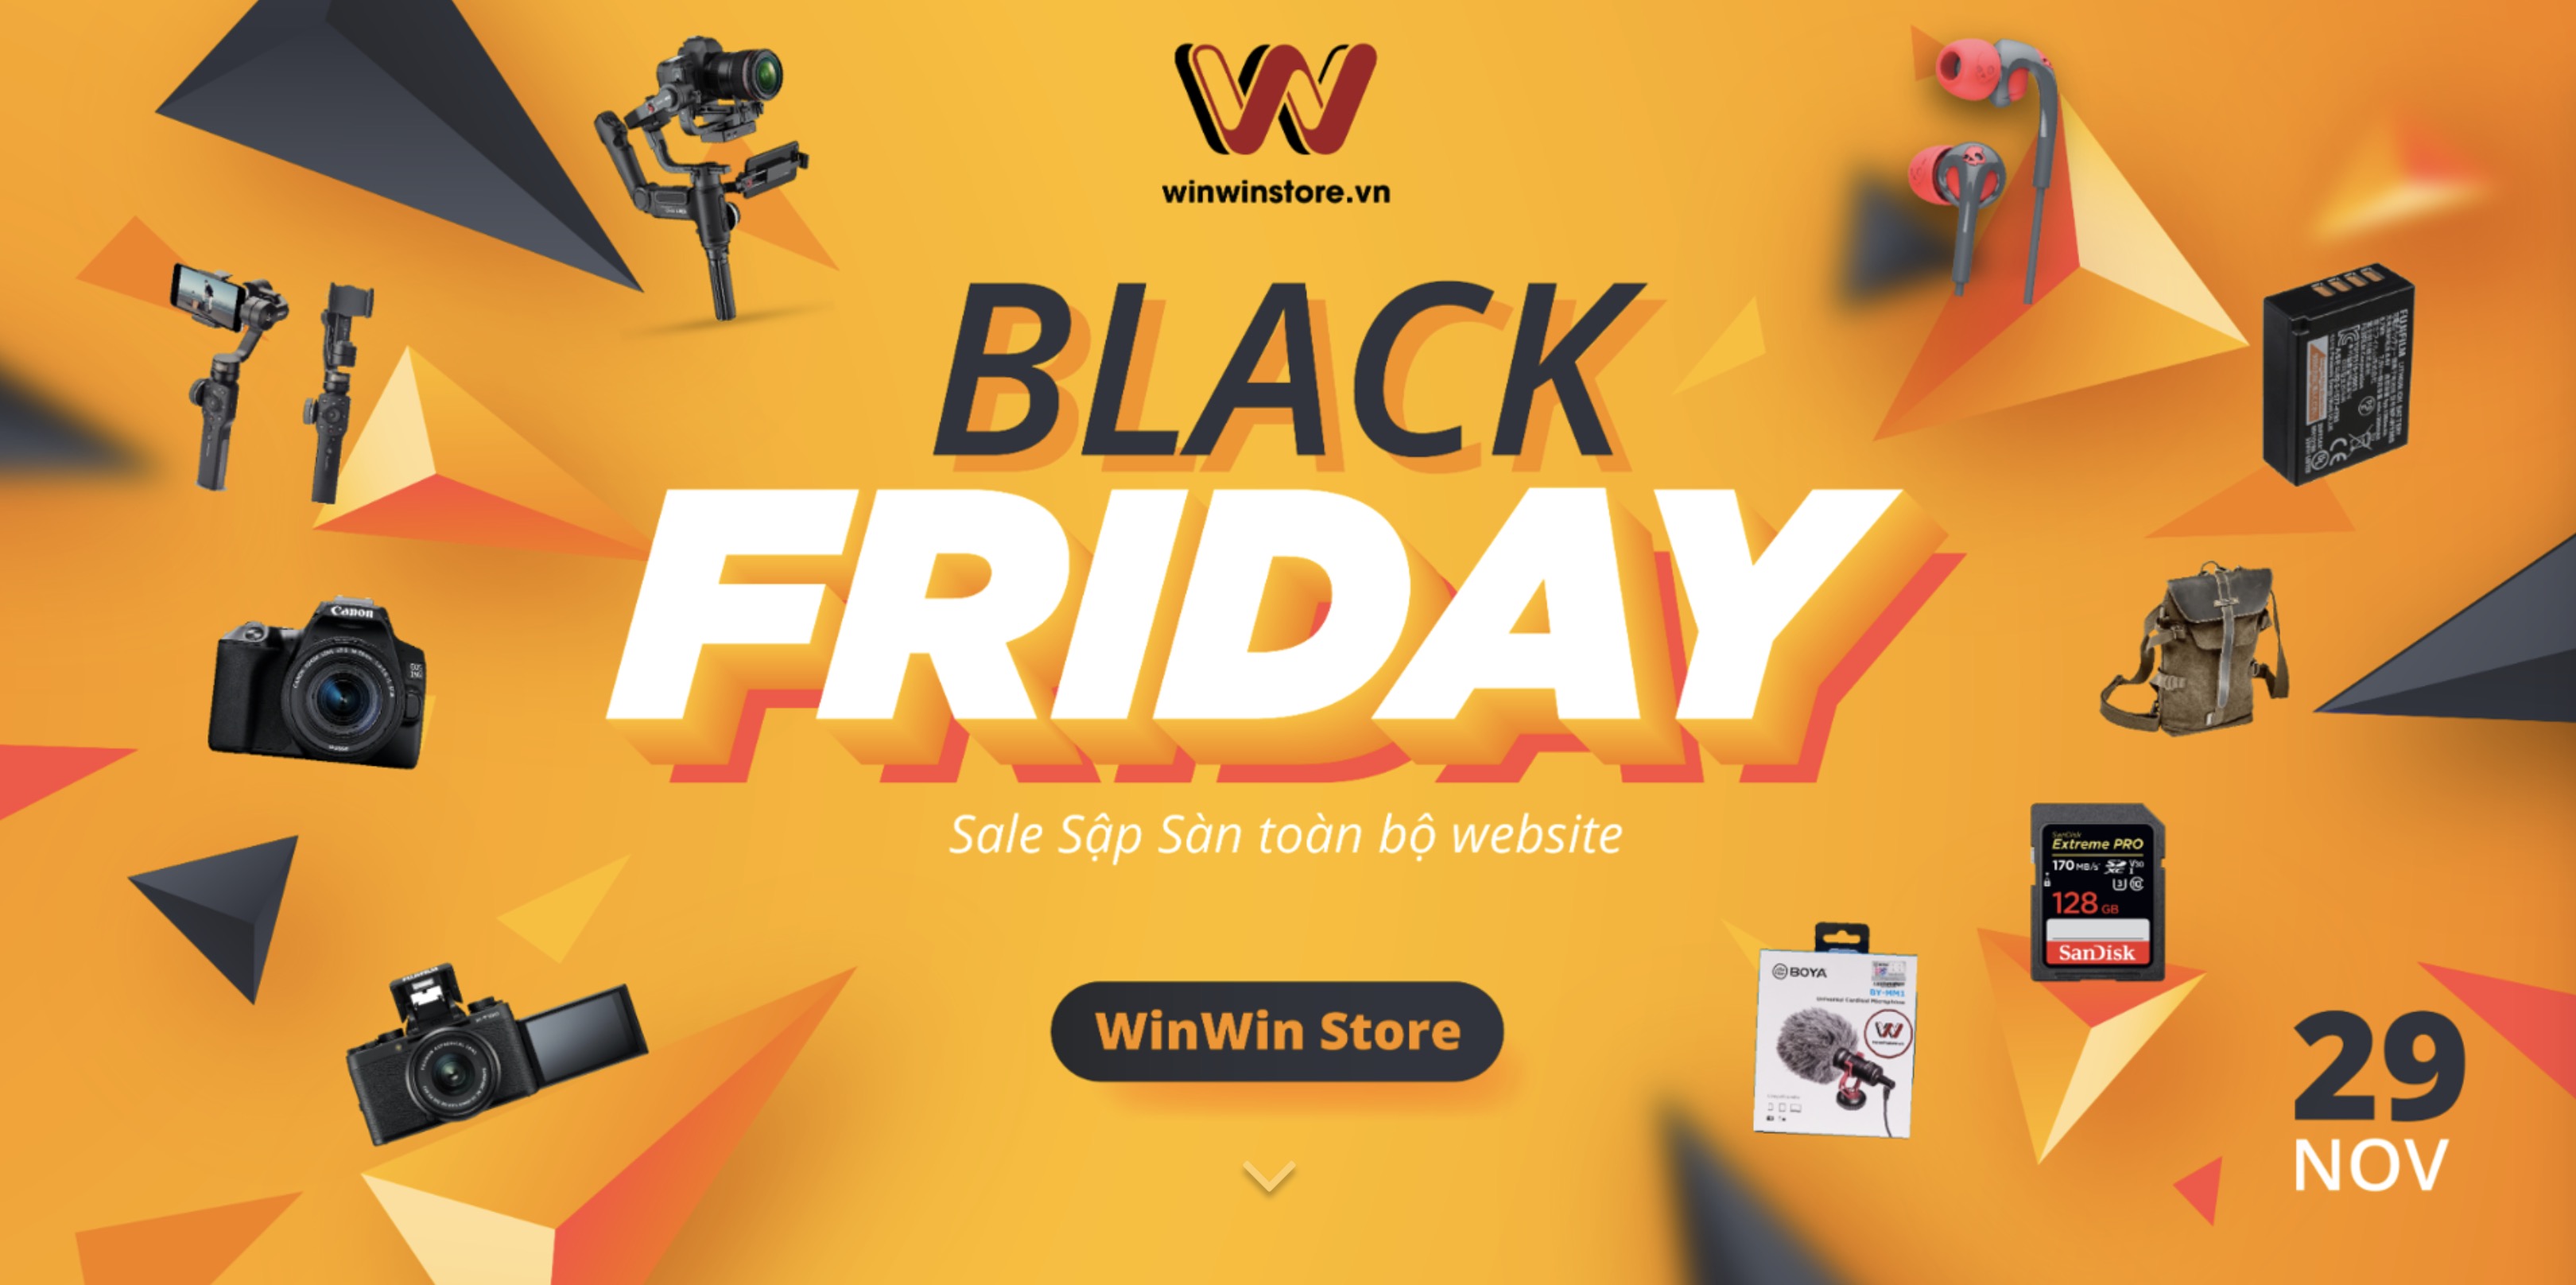 Sale sập sàn toàn bộ website WinWinStore.vn – Duy nhất trong ngày 29/11